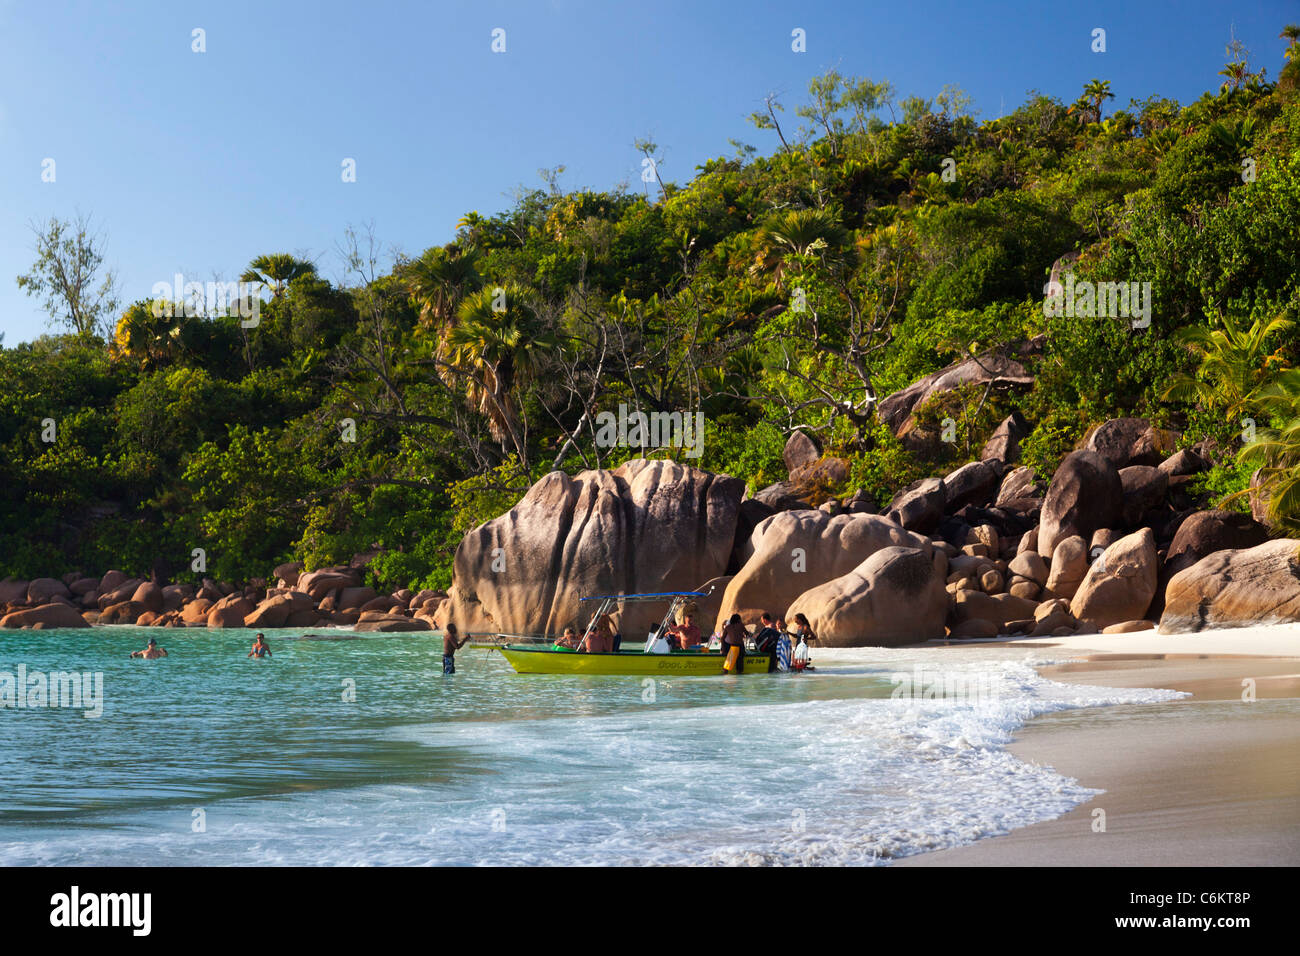 Les rochers de granit sur la berge à Anse Lazio, quartier Baie Sainte Anne, île de Praslin, Seychelles, océan Indien, Afrique Banque D'Images